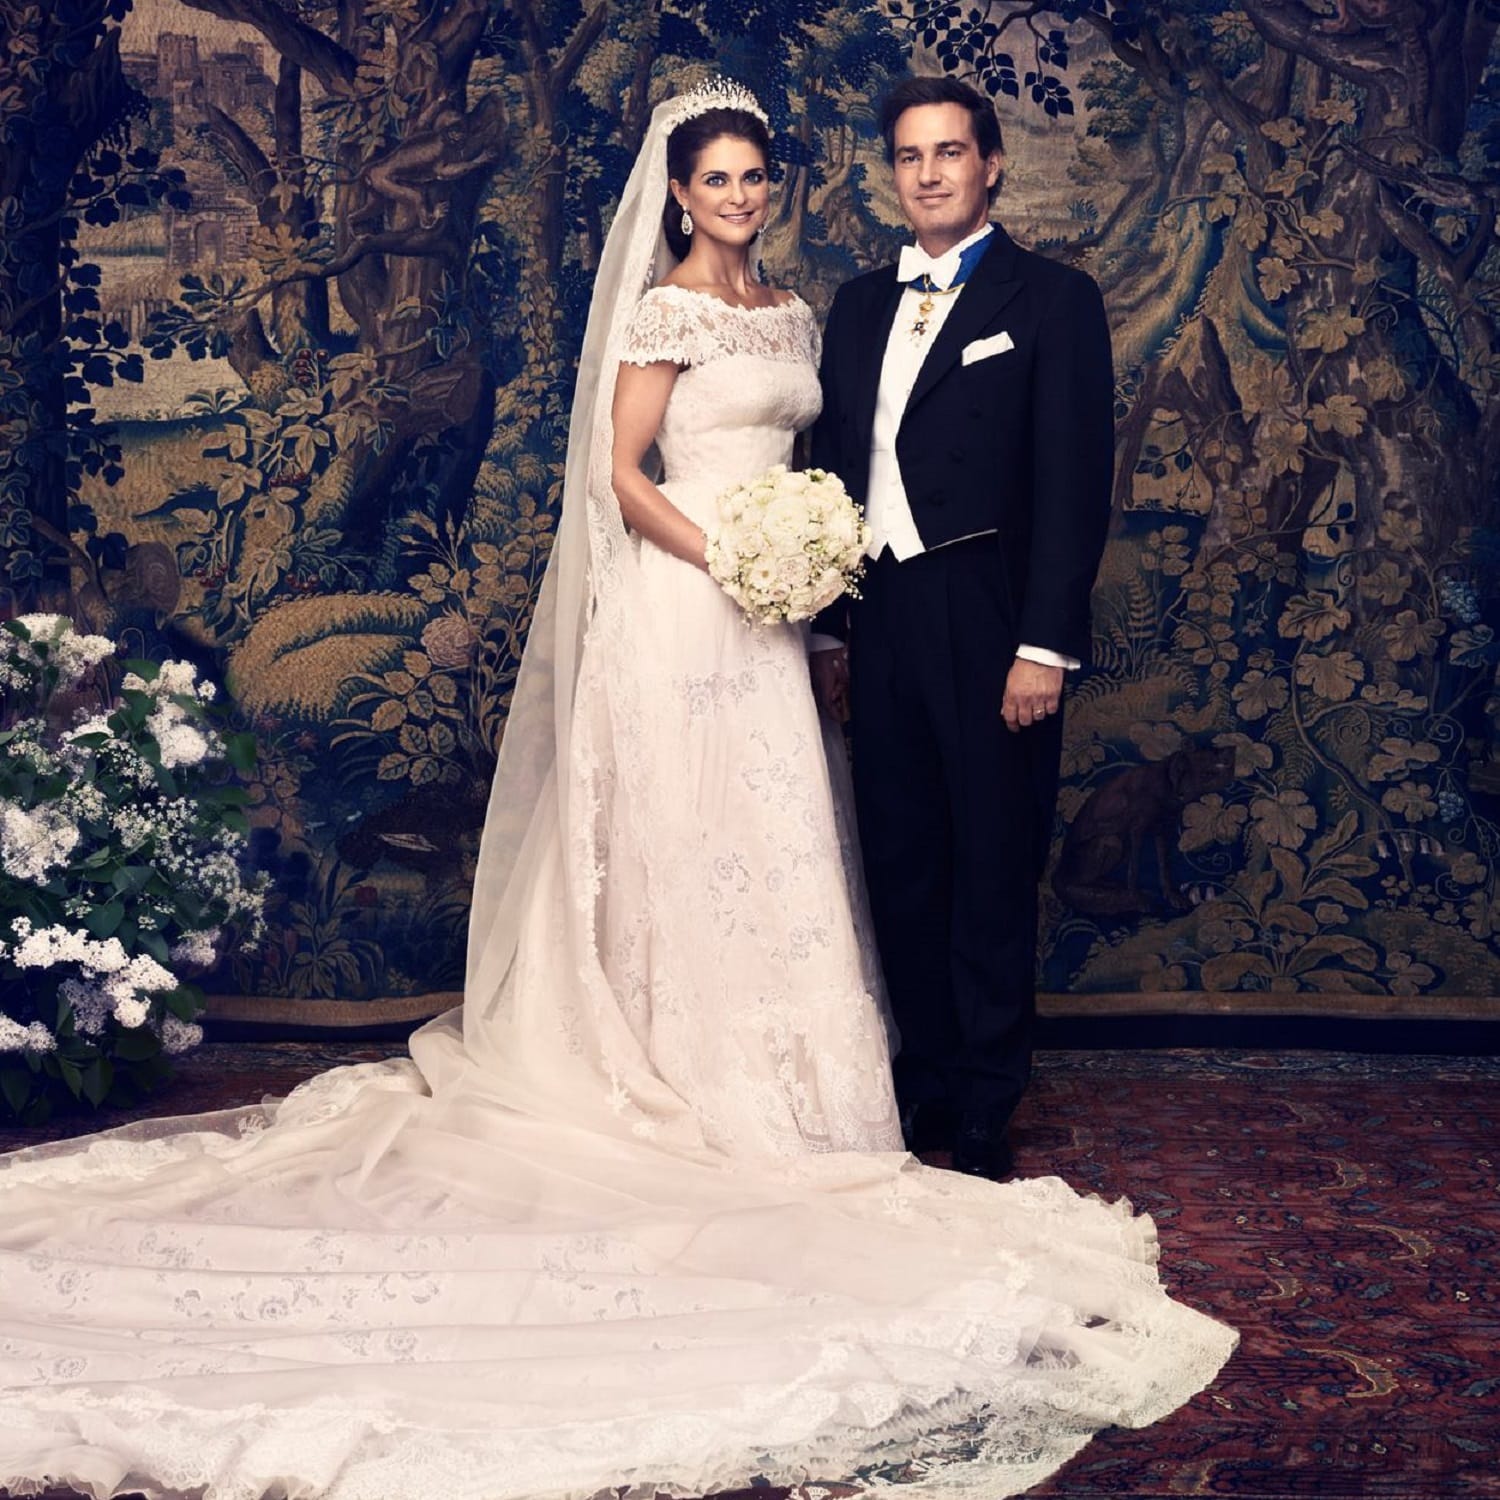 Prinzessin Madeleine und Chris O'Neill: Mit gebrochenem Herzen ging sie nach New York, mit einem Mann kam sie zurück. Zwei Jahre später, am 8. Juni 2013, heiratet die jüngste Tochter von König Carl Gustaf XVI. den Banker Chris O'Neill.